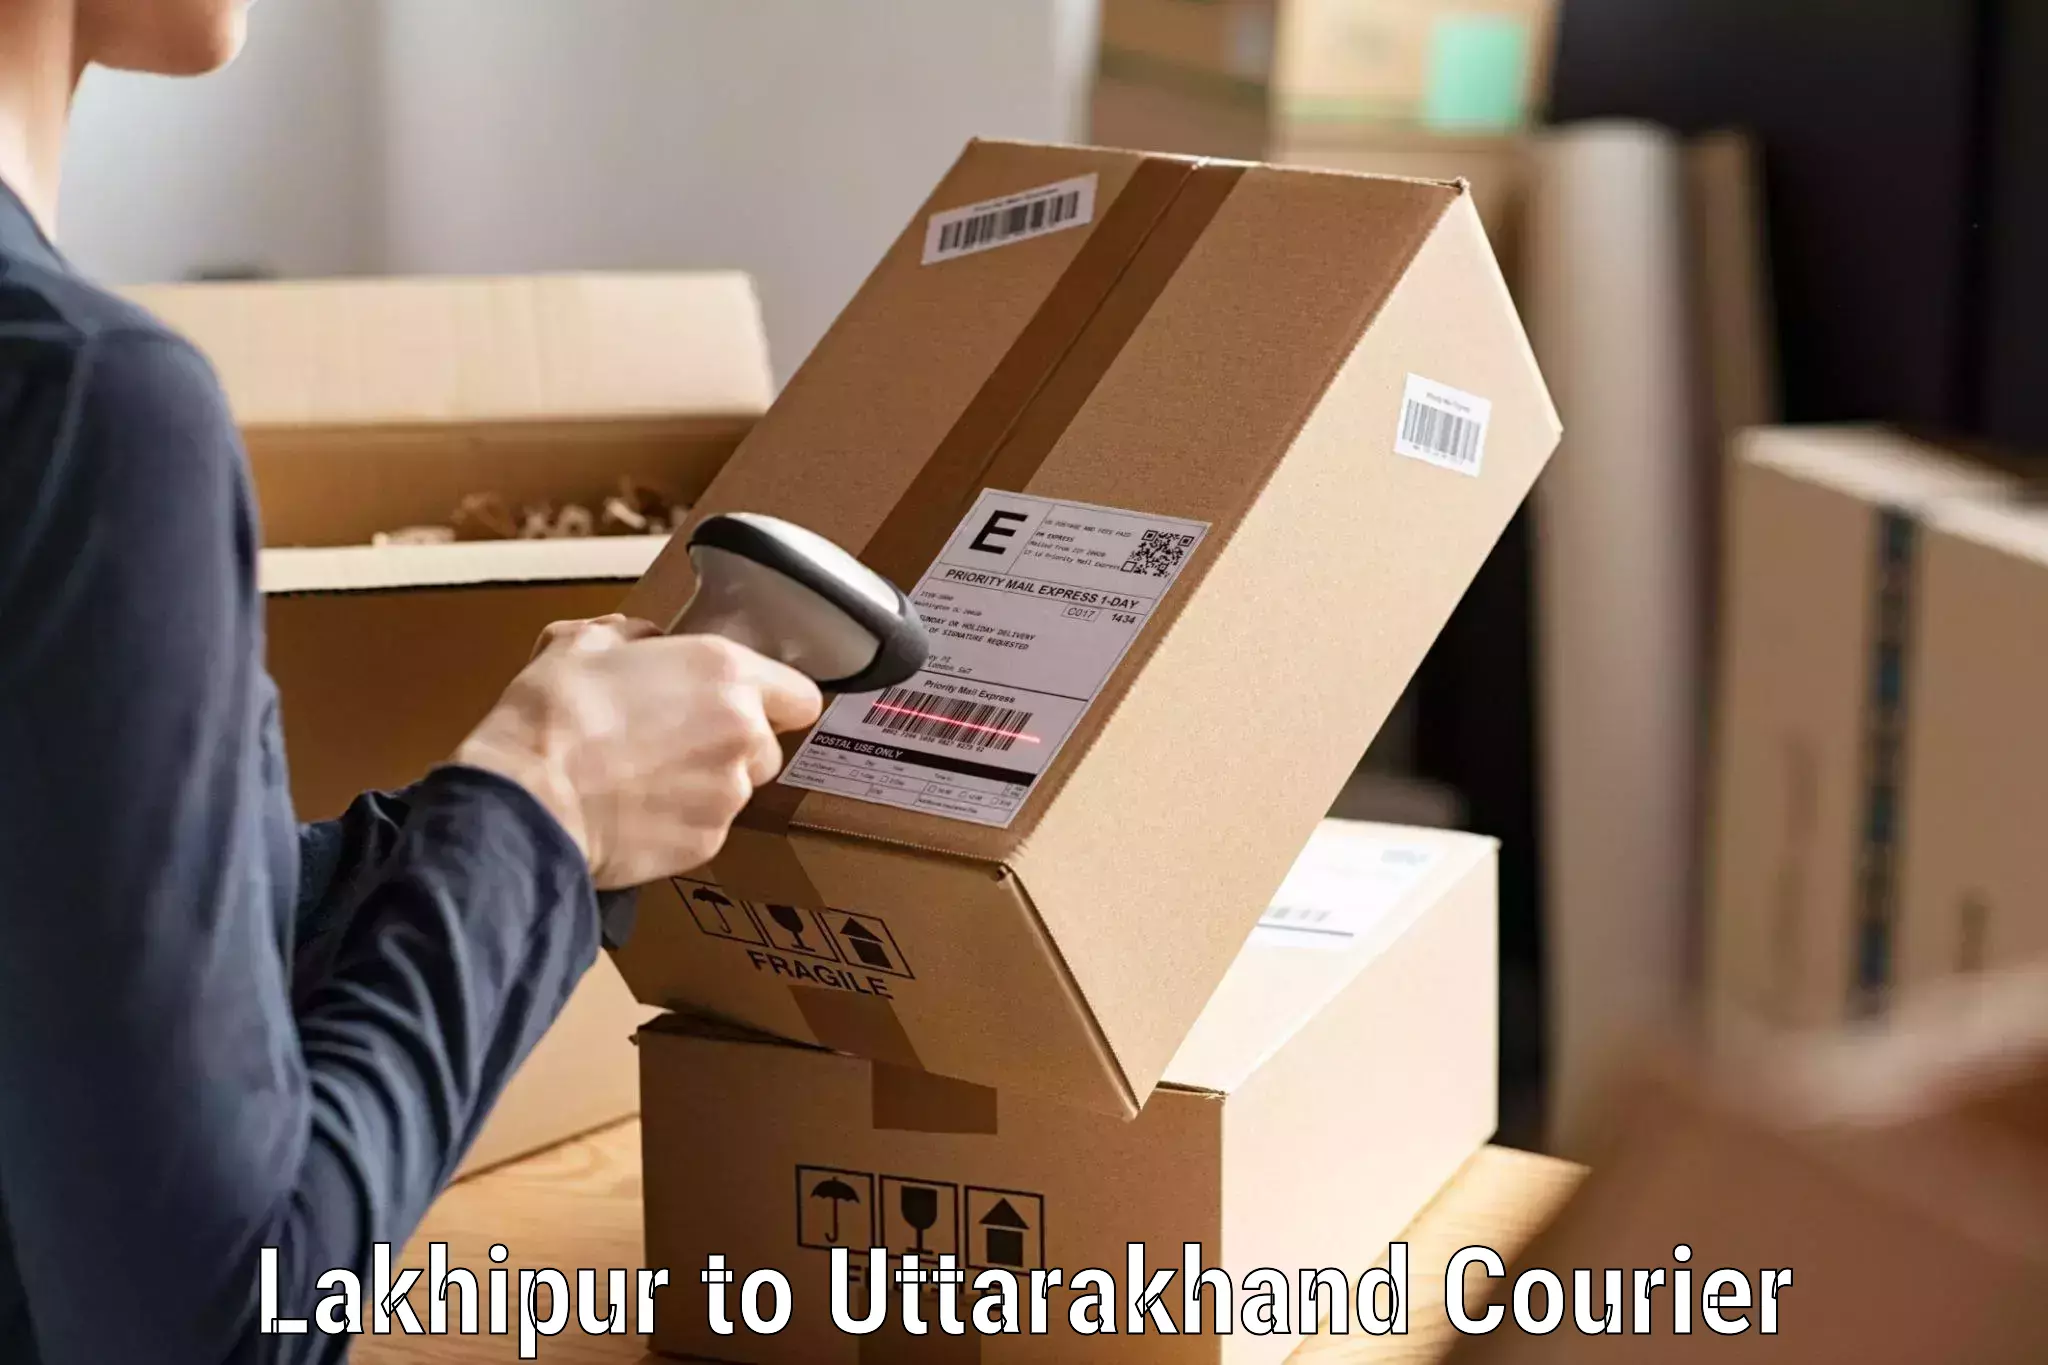 Affordable parcel service Lakhipur to Doiwala